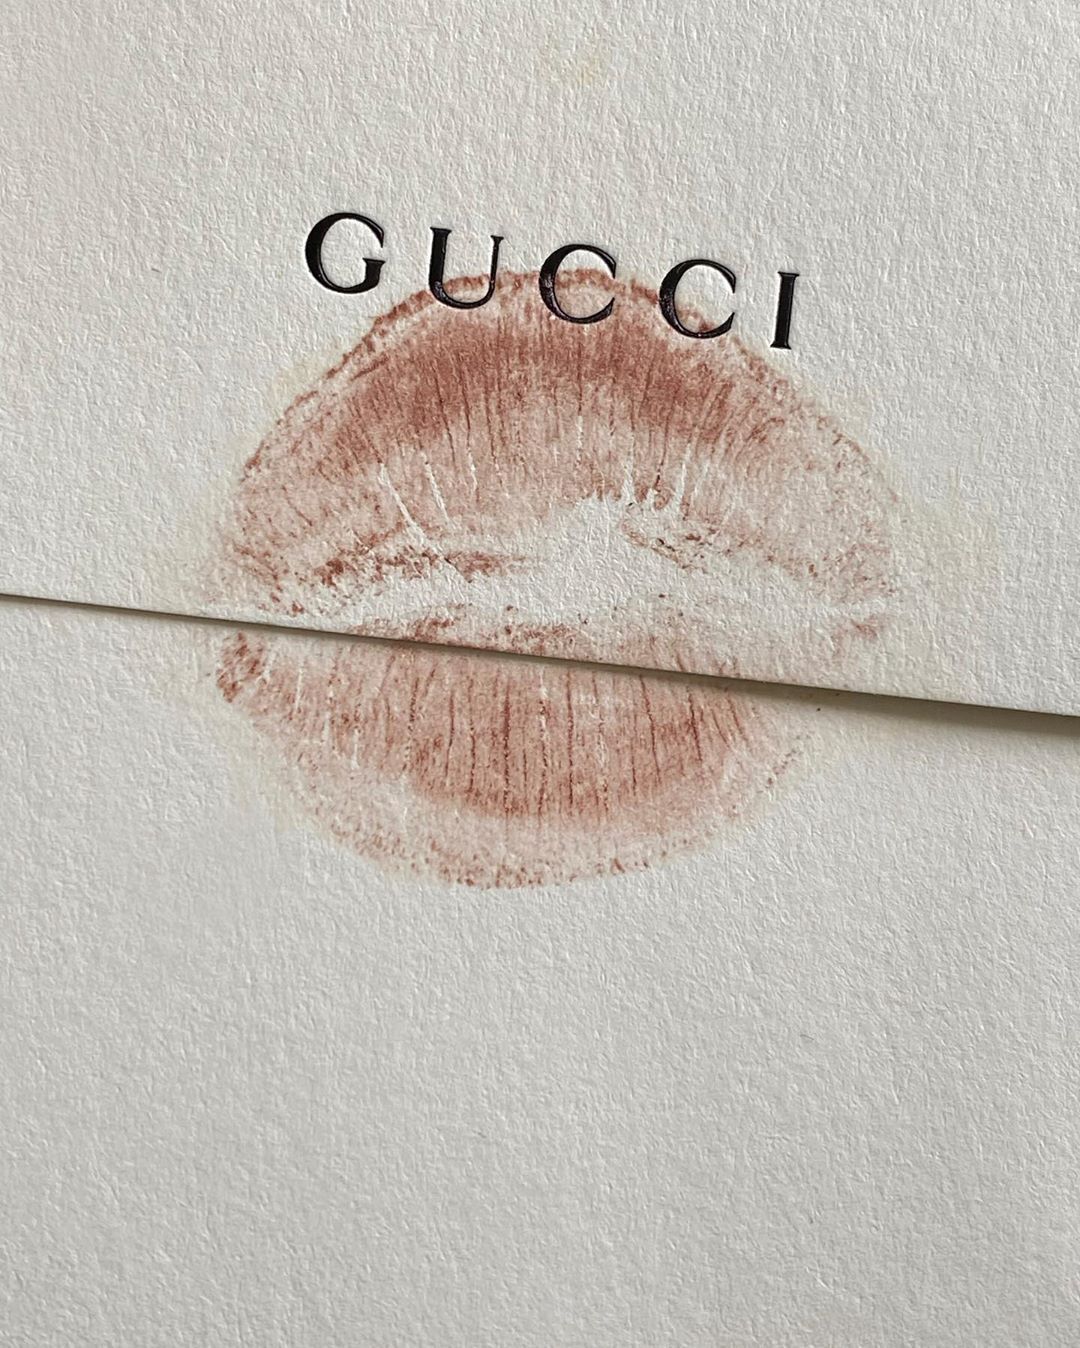 Beige Wallpaper Photo : Nude lipstick mark and Gucci Wallpaper